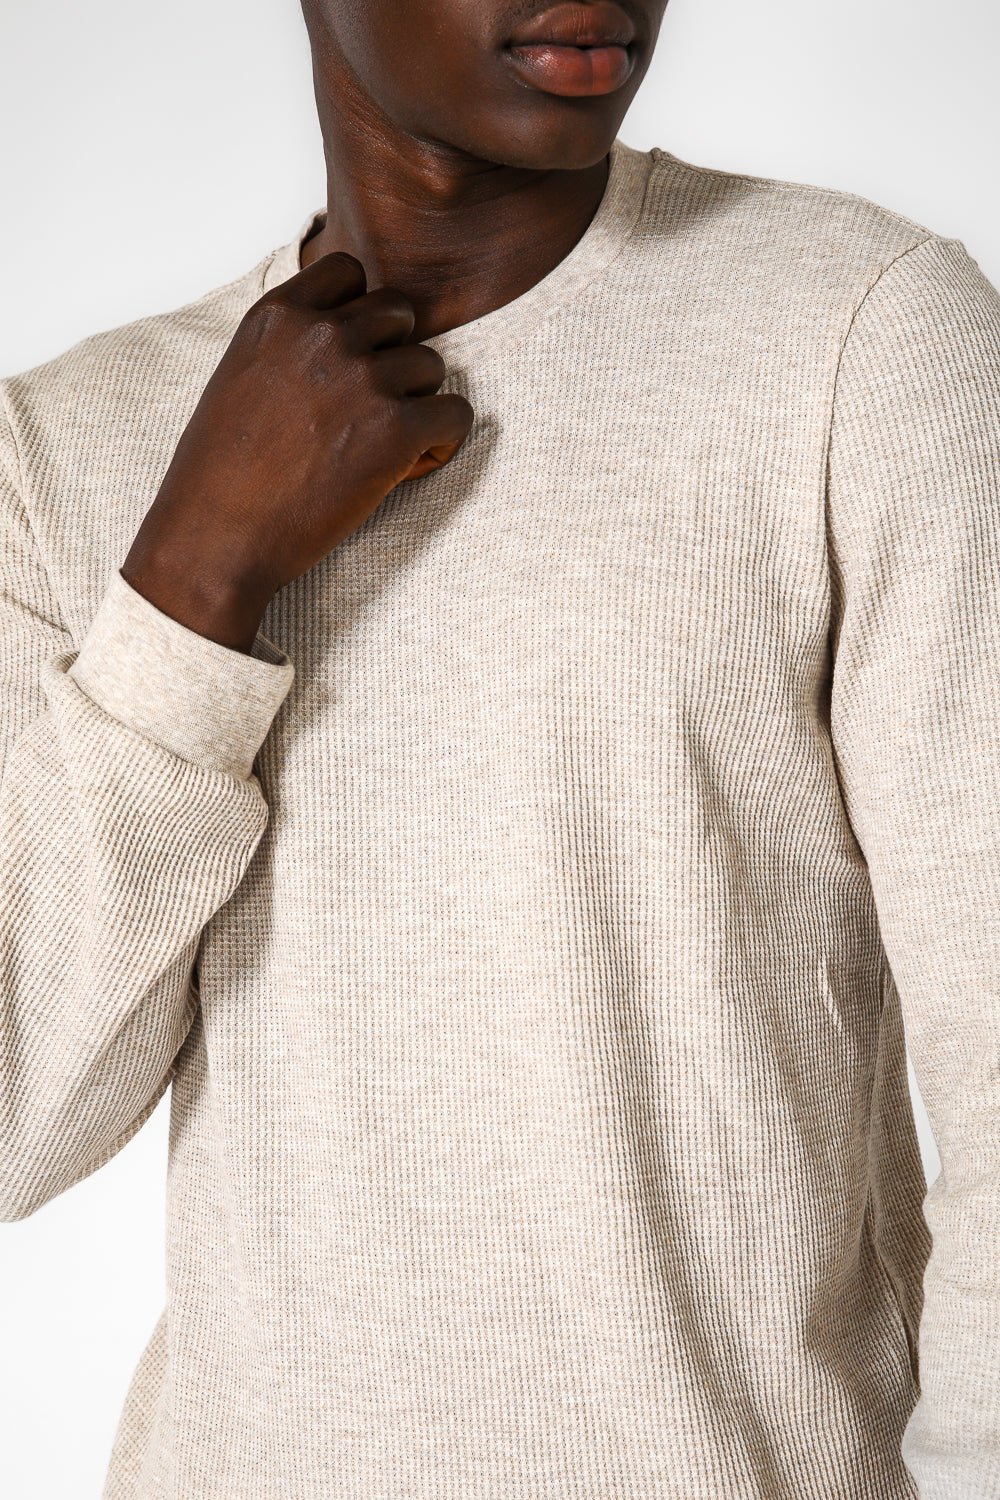 DELTA - חולצה ארוכה דקה מבד וופל בצבע בז' - MASHBIR//365